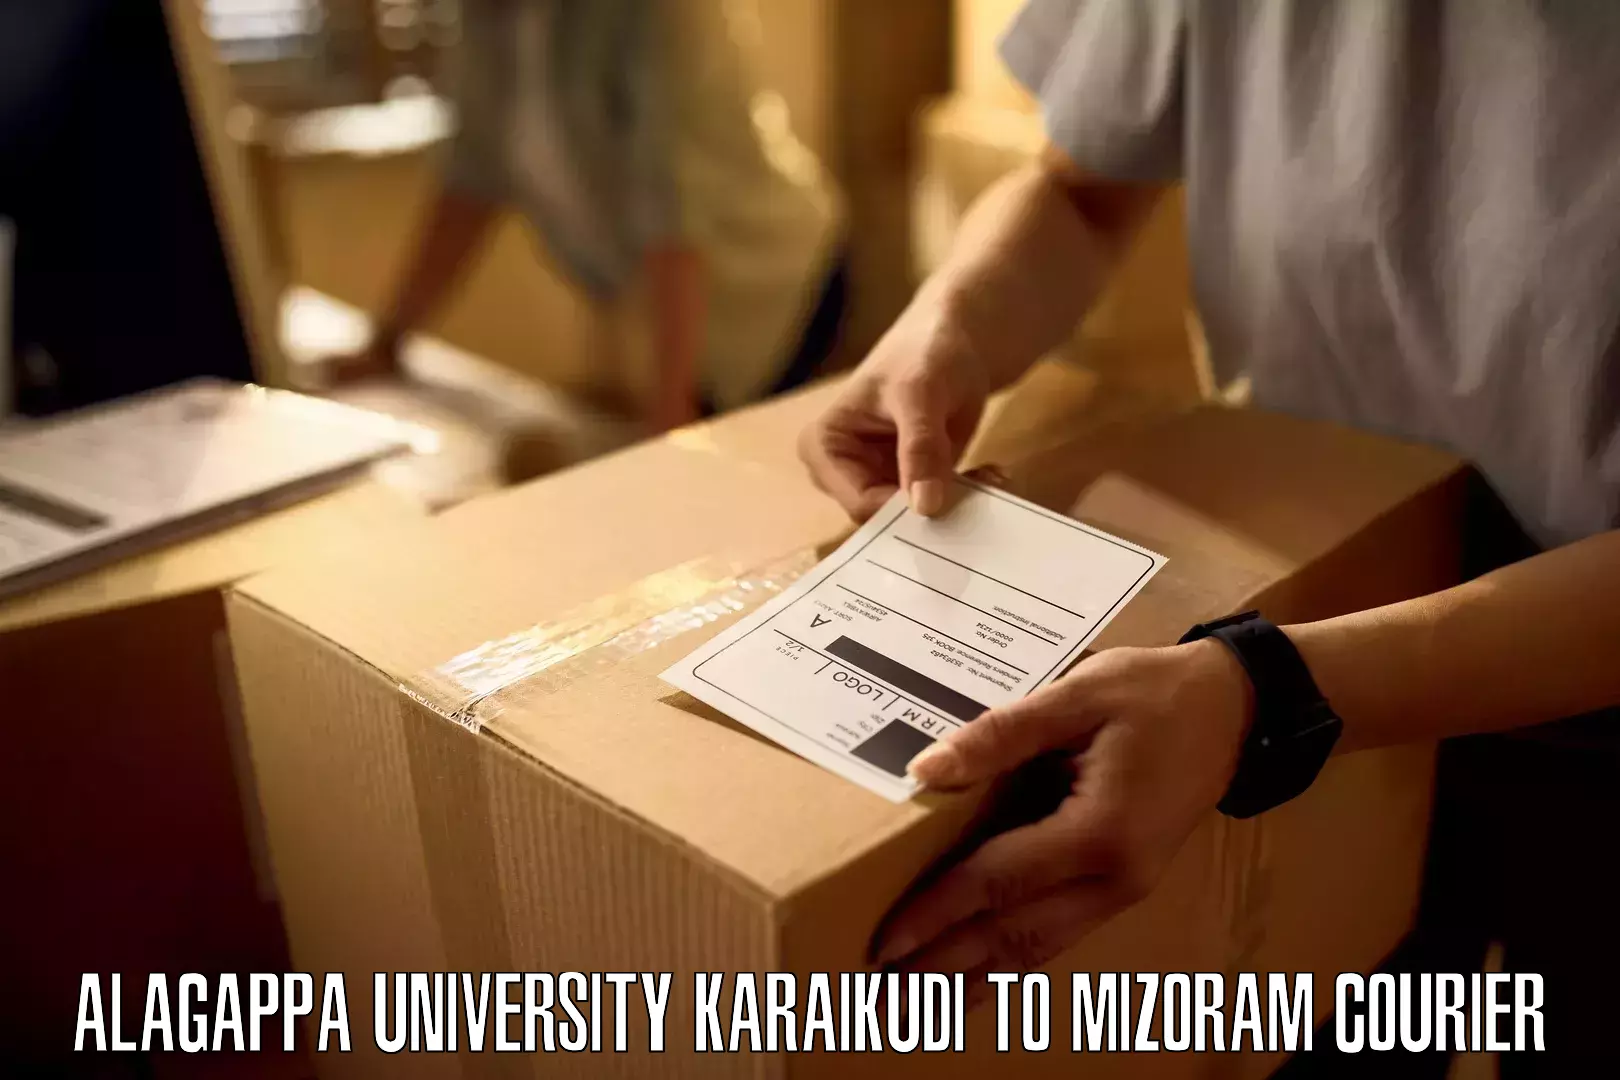 Professional courier handling Alagappa University Karaikudi to Darlawn